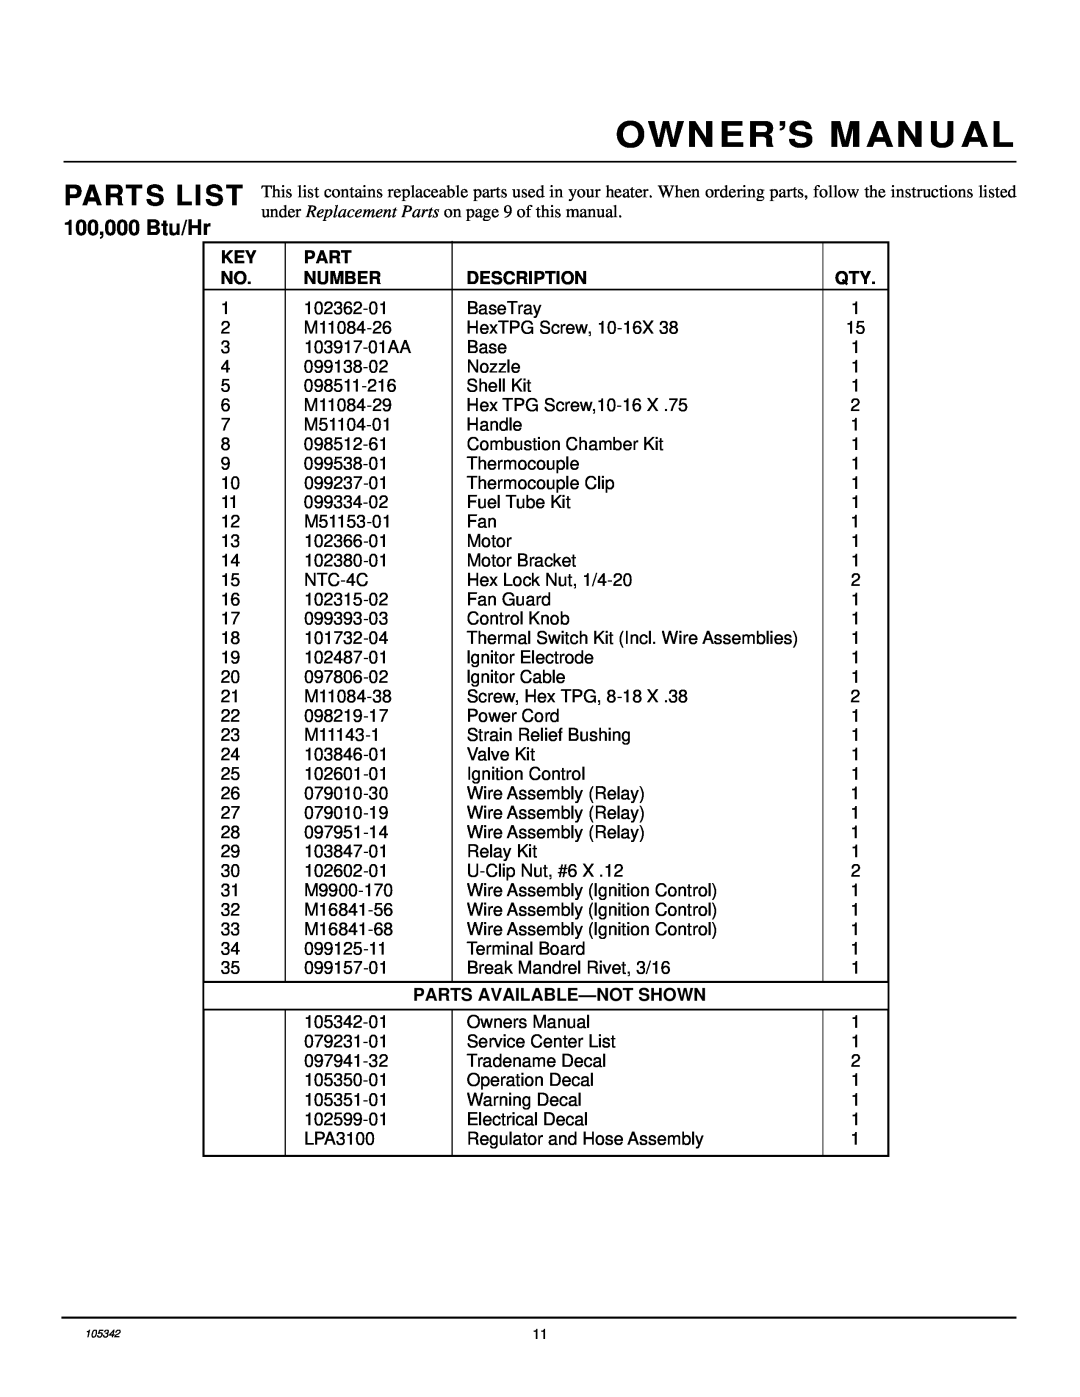 Desa RM100LP owner manual Parts List, Number, Description, Parts Available-Notshown 